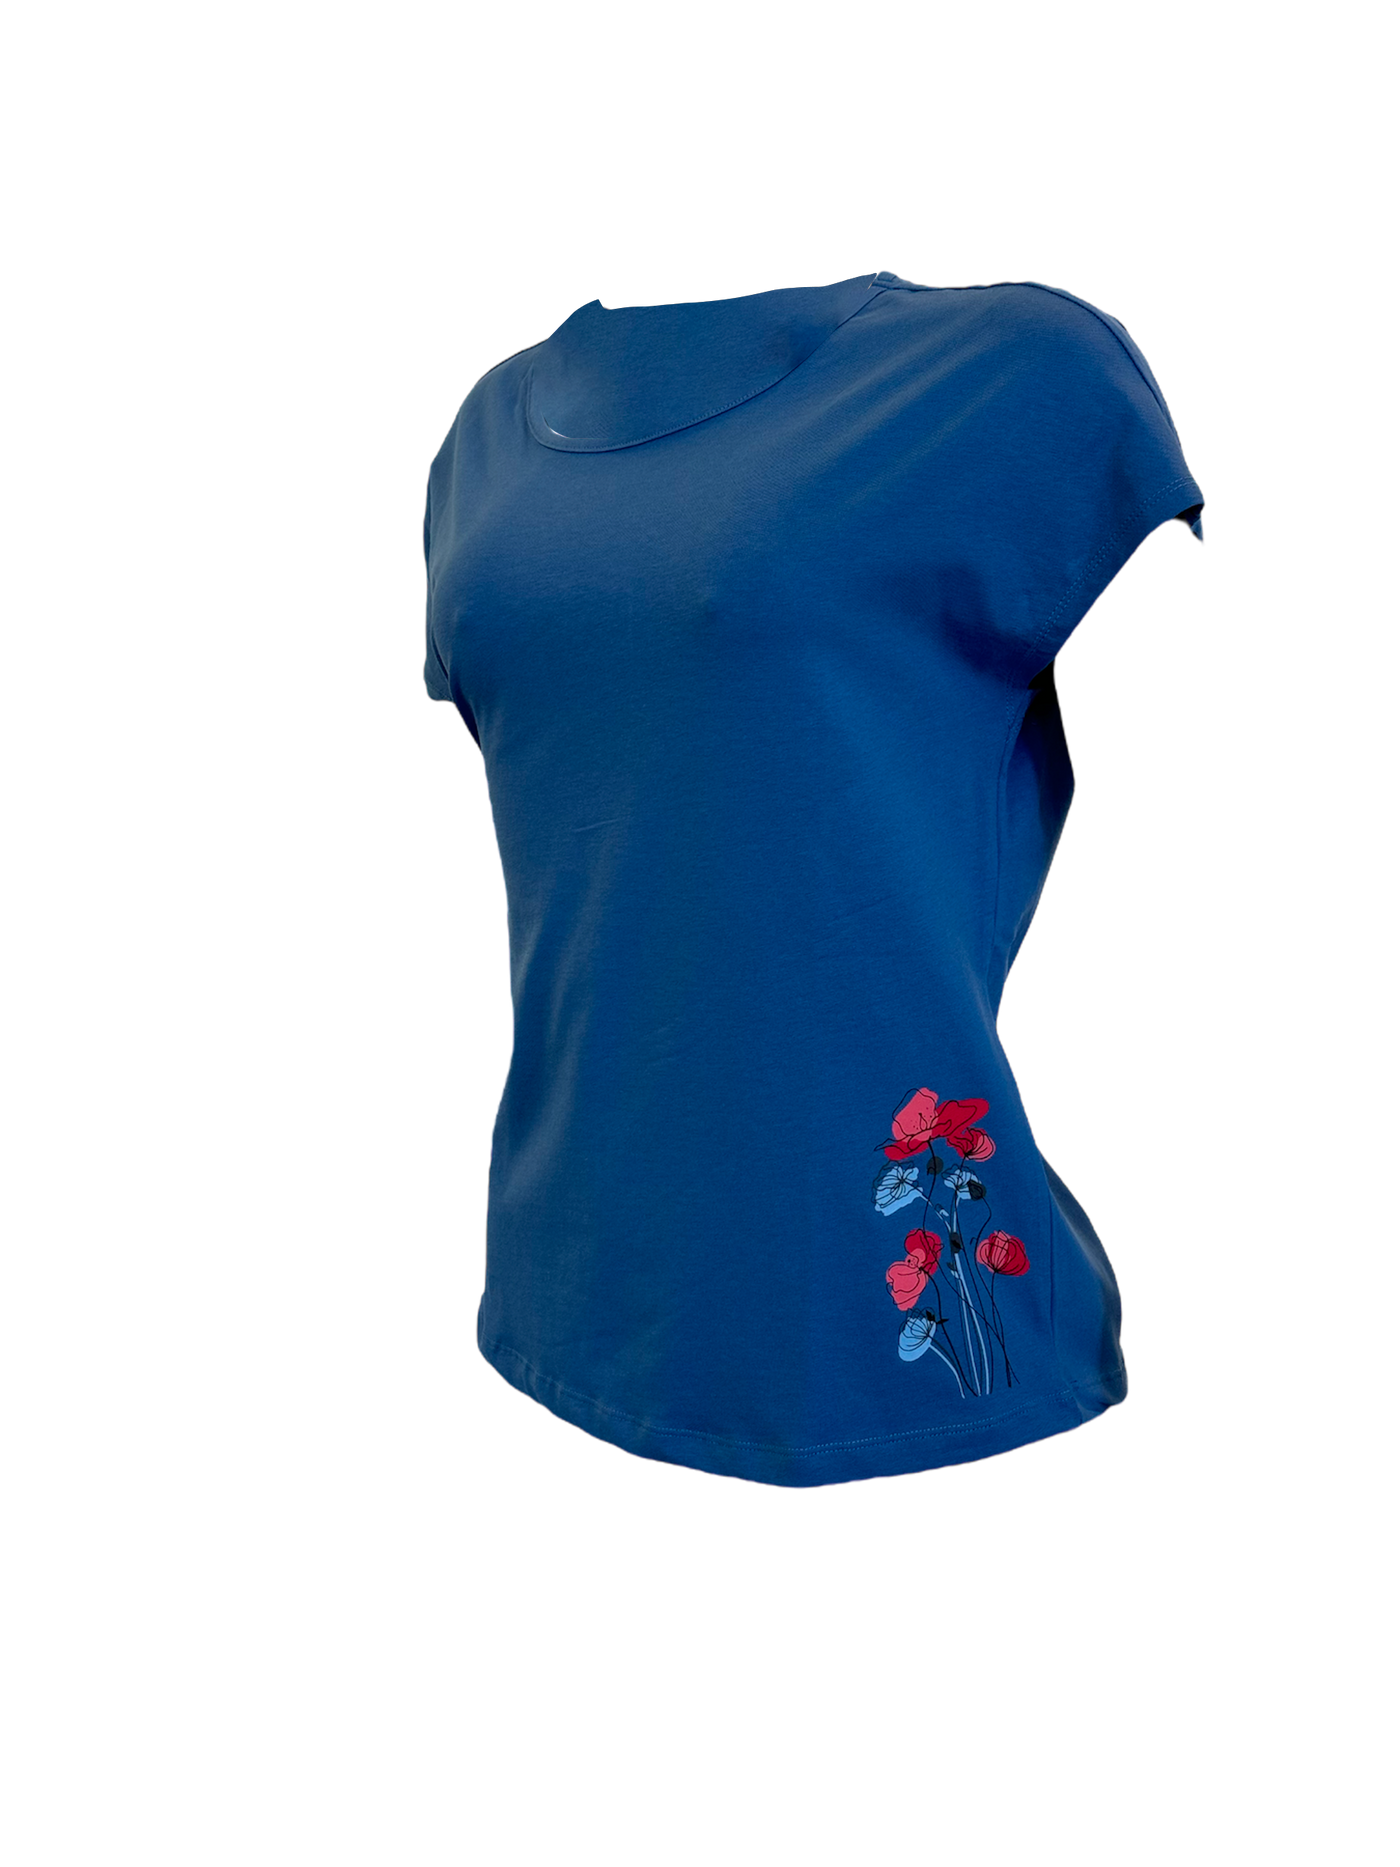 T-shirt bleu en coton biologique avec un imprimé fleurs au bas coté gauche.